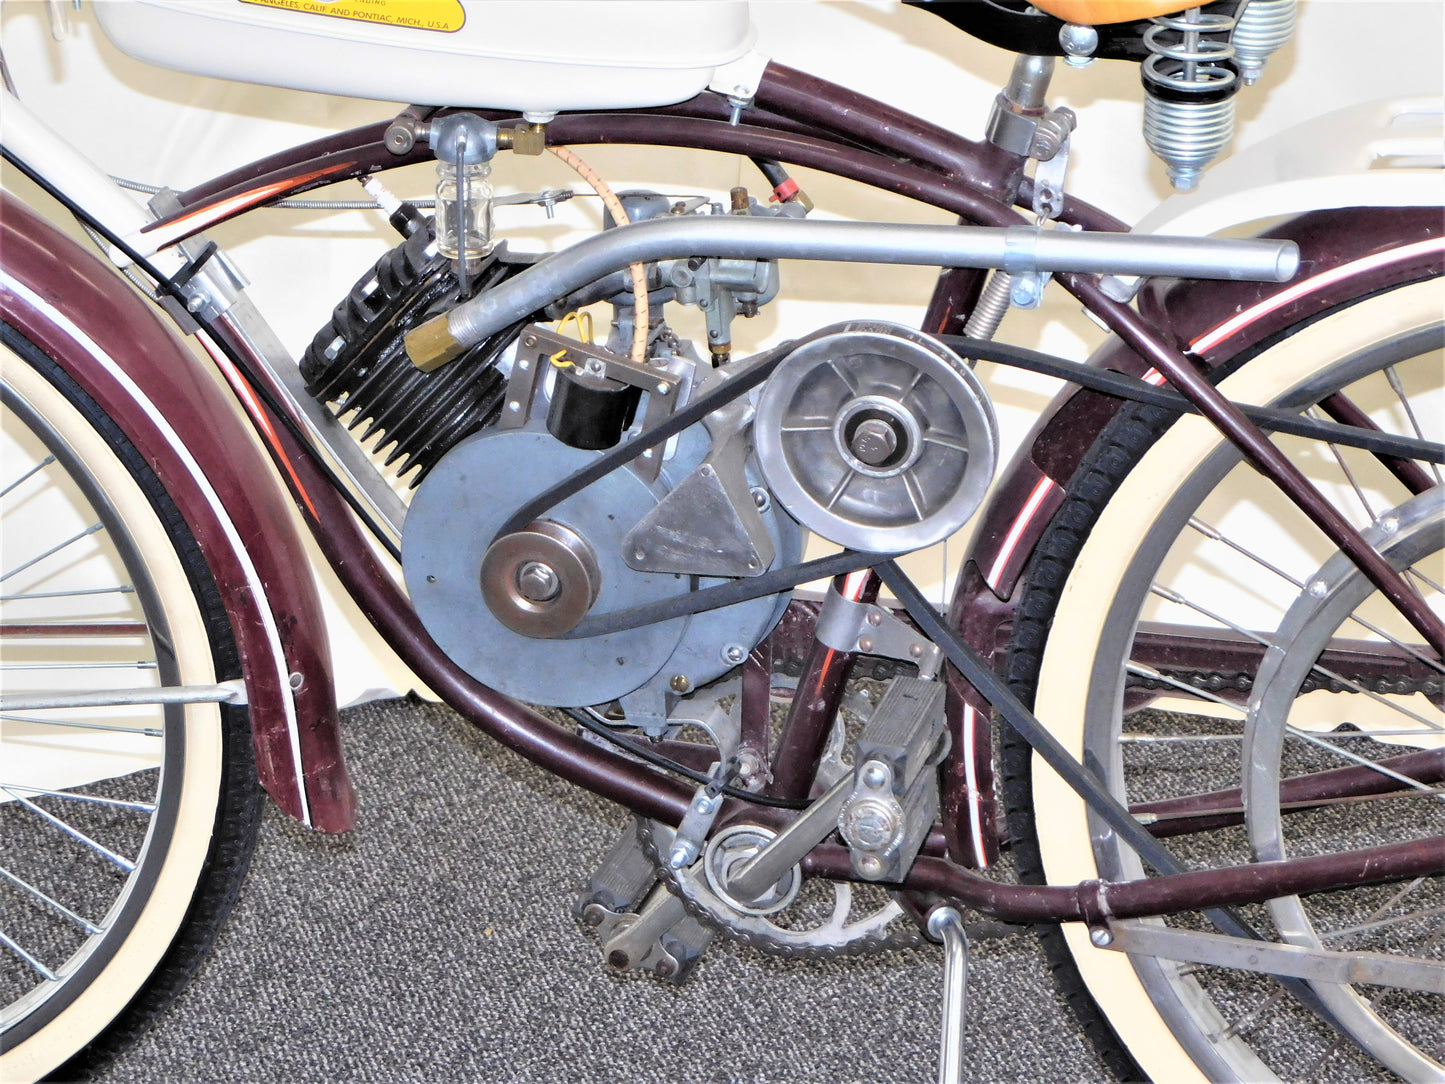 1950 Schwinn S-4 Bicycle w/ Whizzer Motor